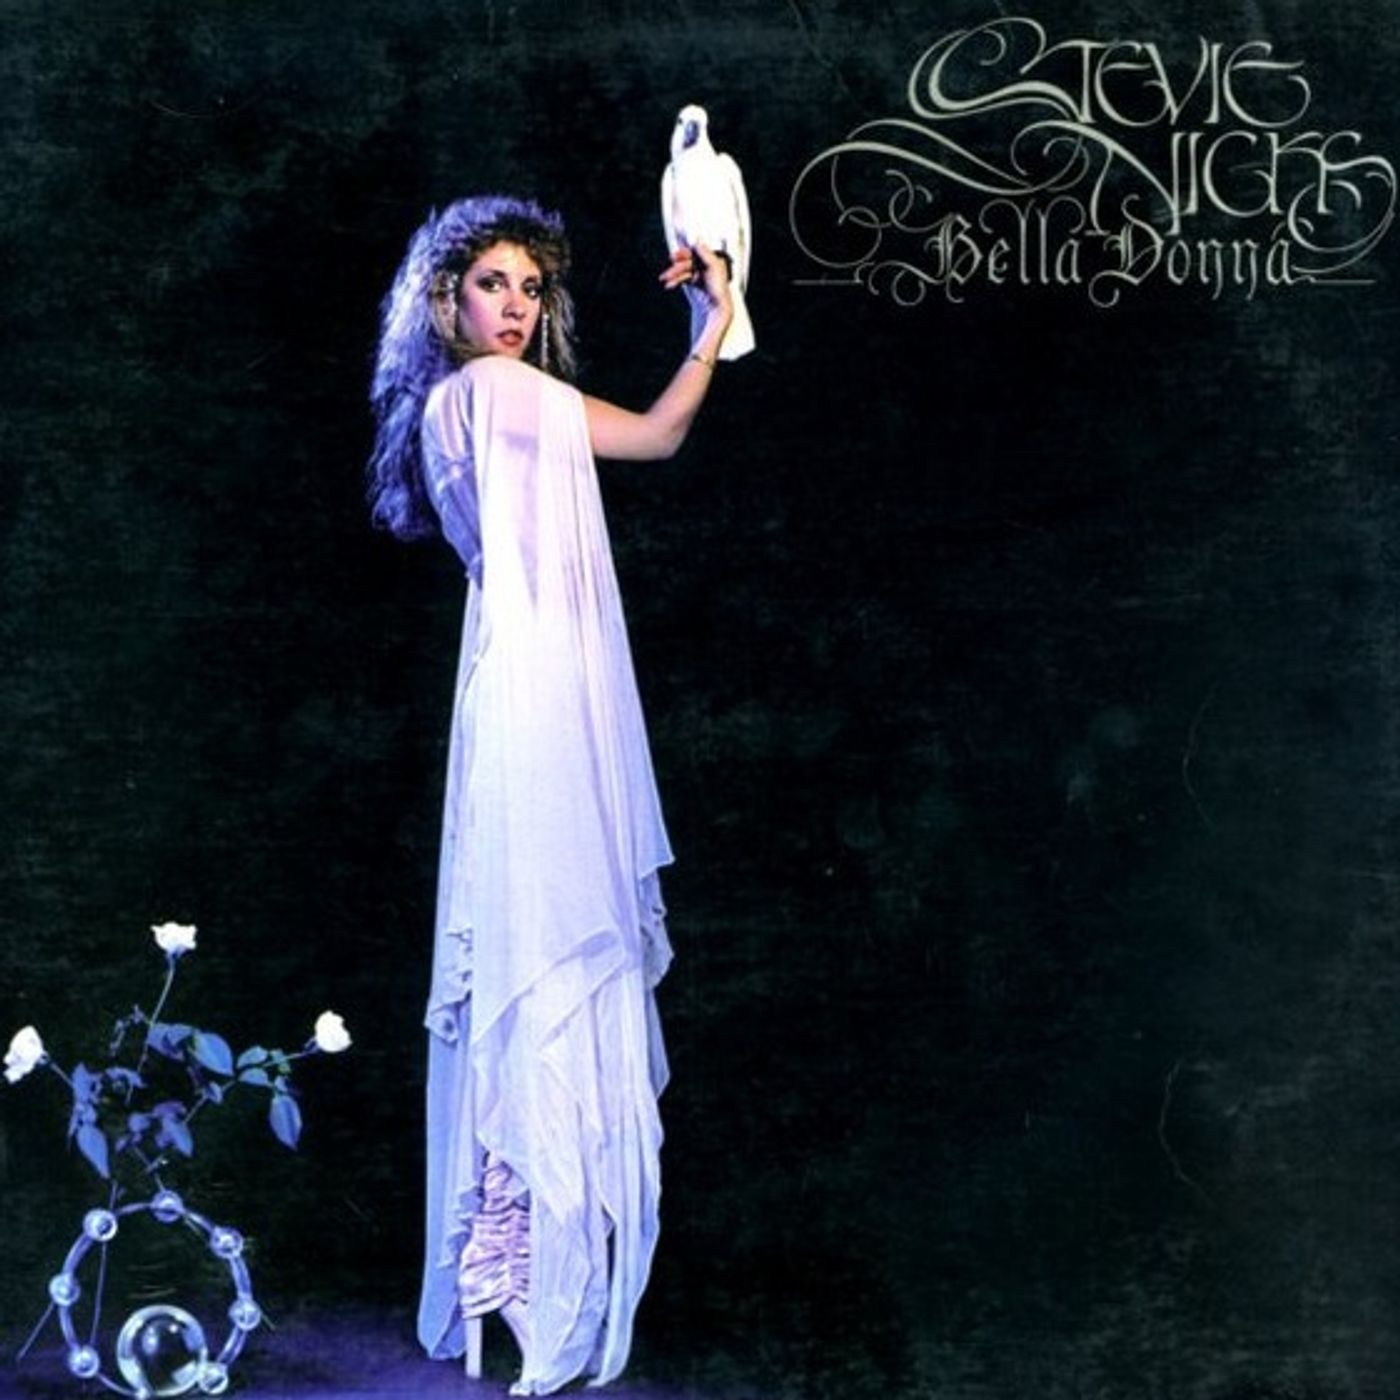 Stevie Nicks, famosa negli anni 70 come uno dei 3 cantautori della band Fleetwood Mac, nel 1981 pubblicò da solista la hit Edge Of Seventeen